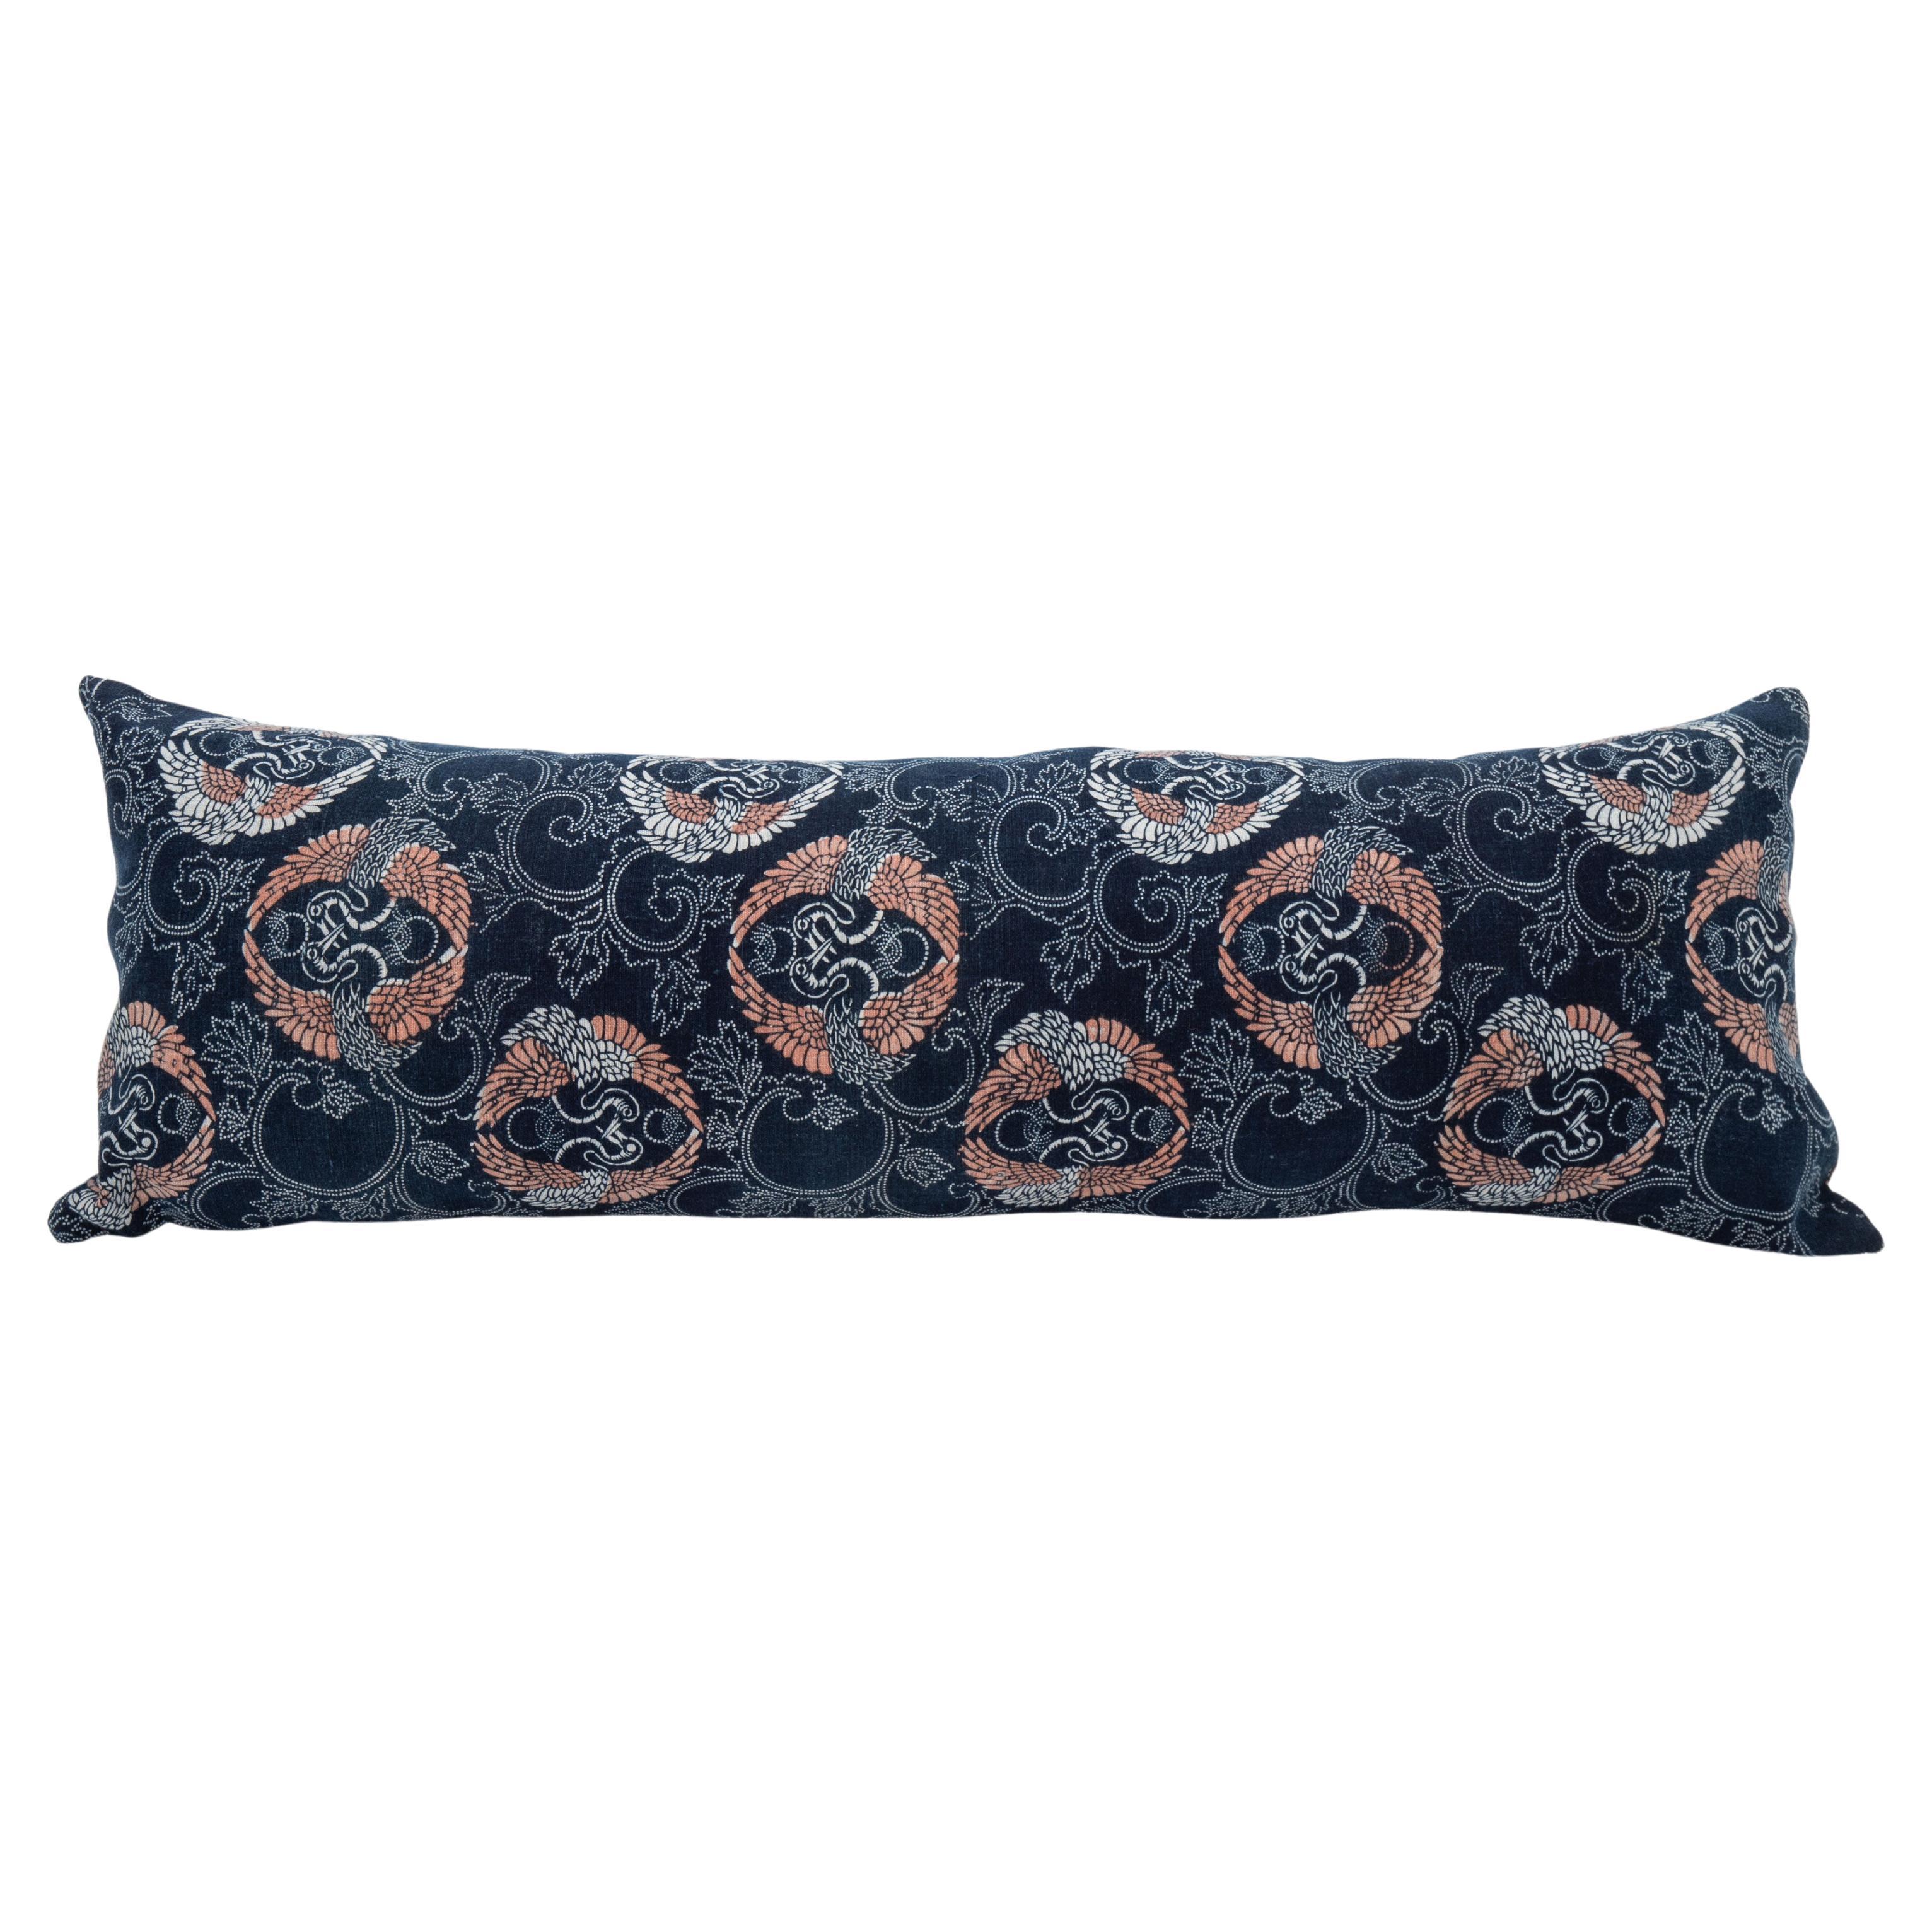 Vintage Japanese Indigo Batik Lumbar Pillow Case